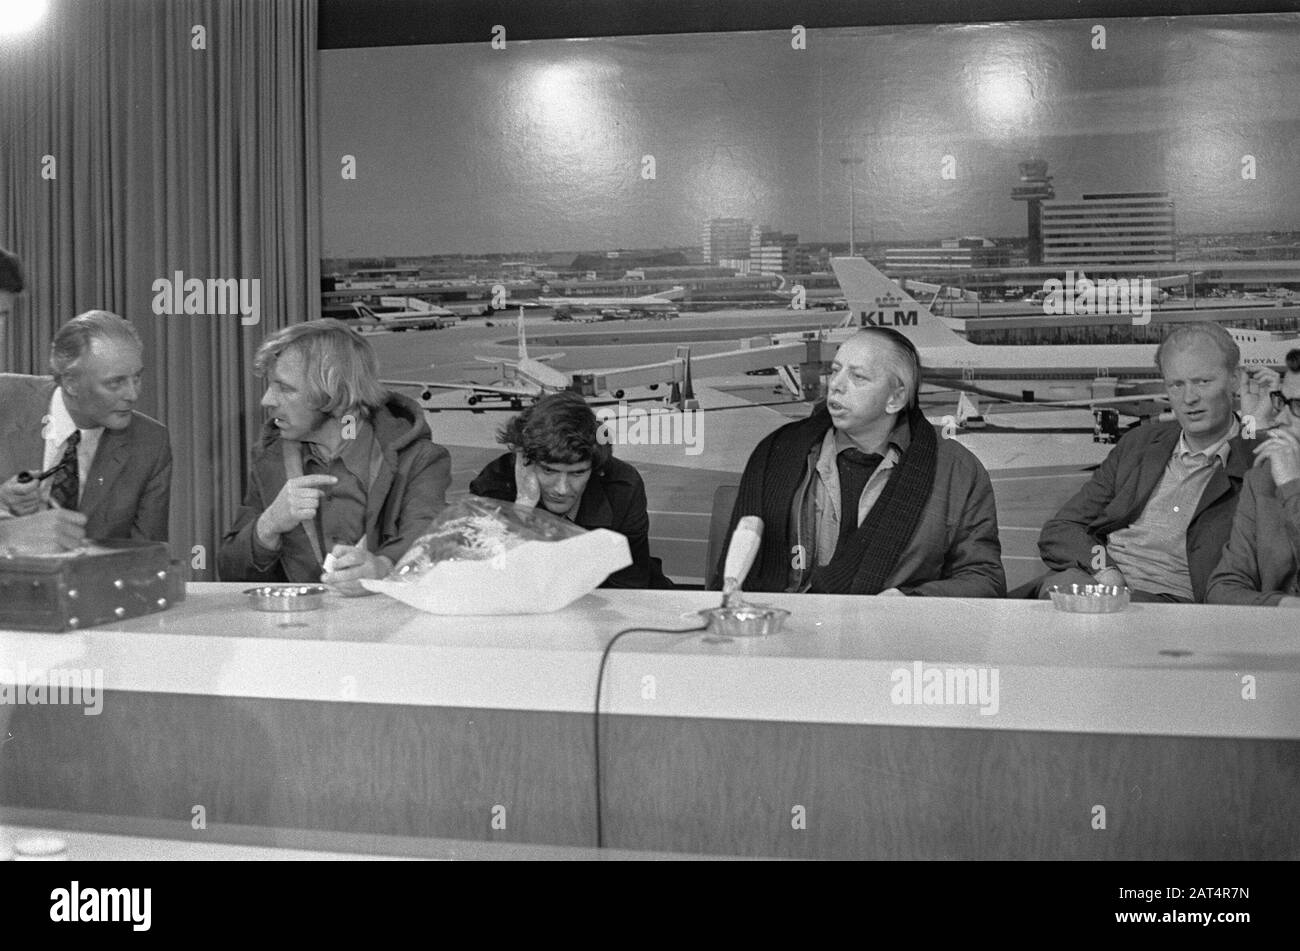 Giornalisti e sacerdoti sono tornati dal Cile dopo il colpo di stato militare a Schiphol Data: 1 ottobre 1973 Località: Noord-Holland, Schiphol Parole Chiave: JOURNALISS, PRIESTRI Foto Stock